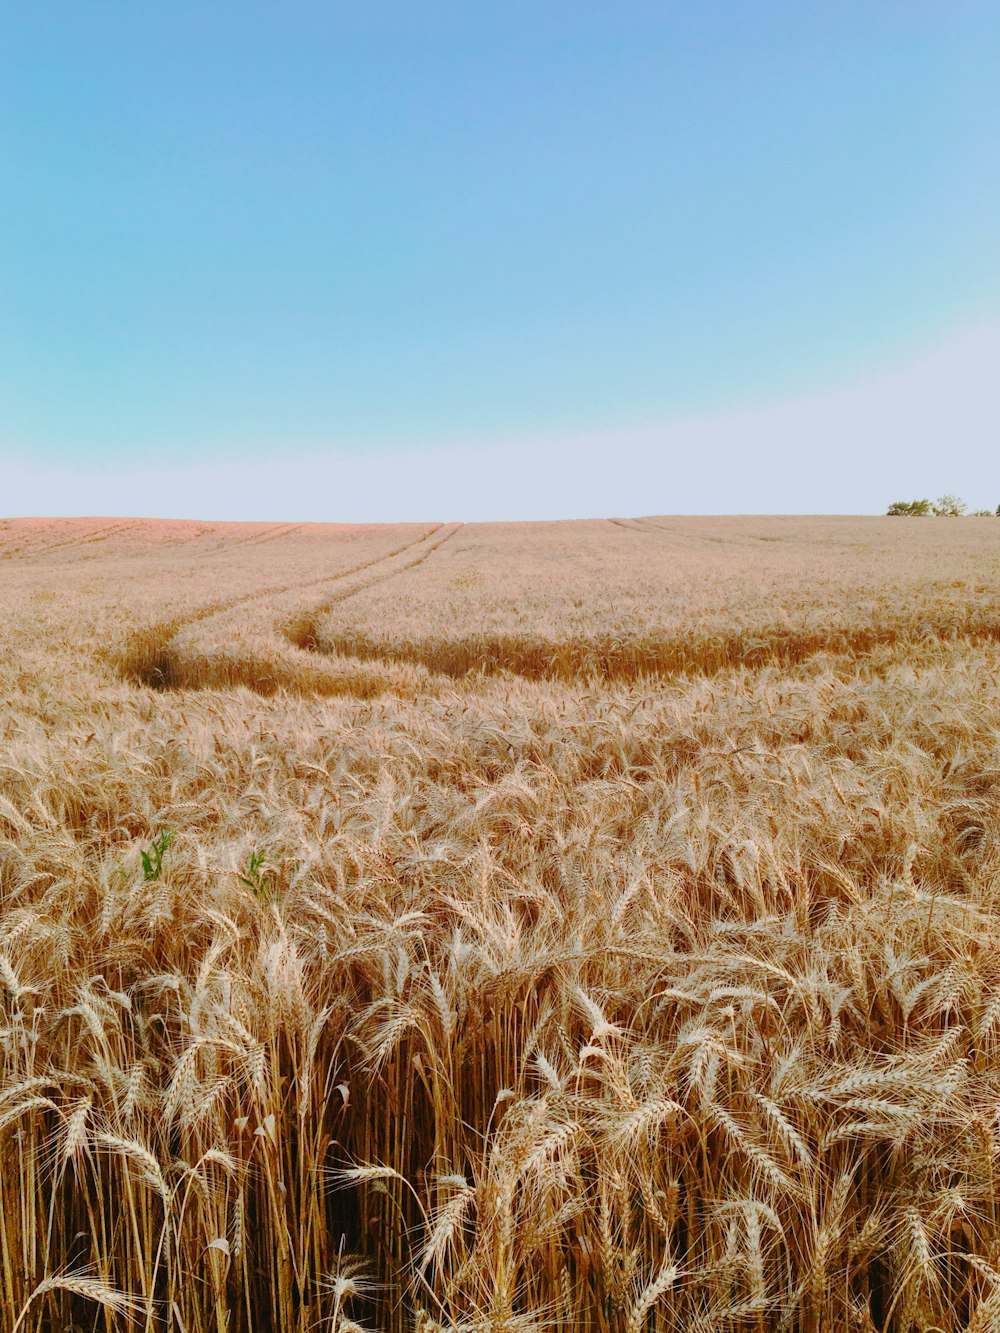 Un campo di grano con un cielo blu sullo sfondo